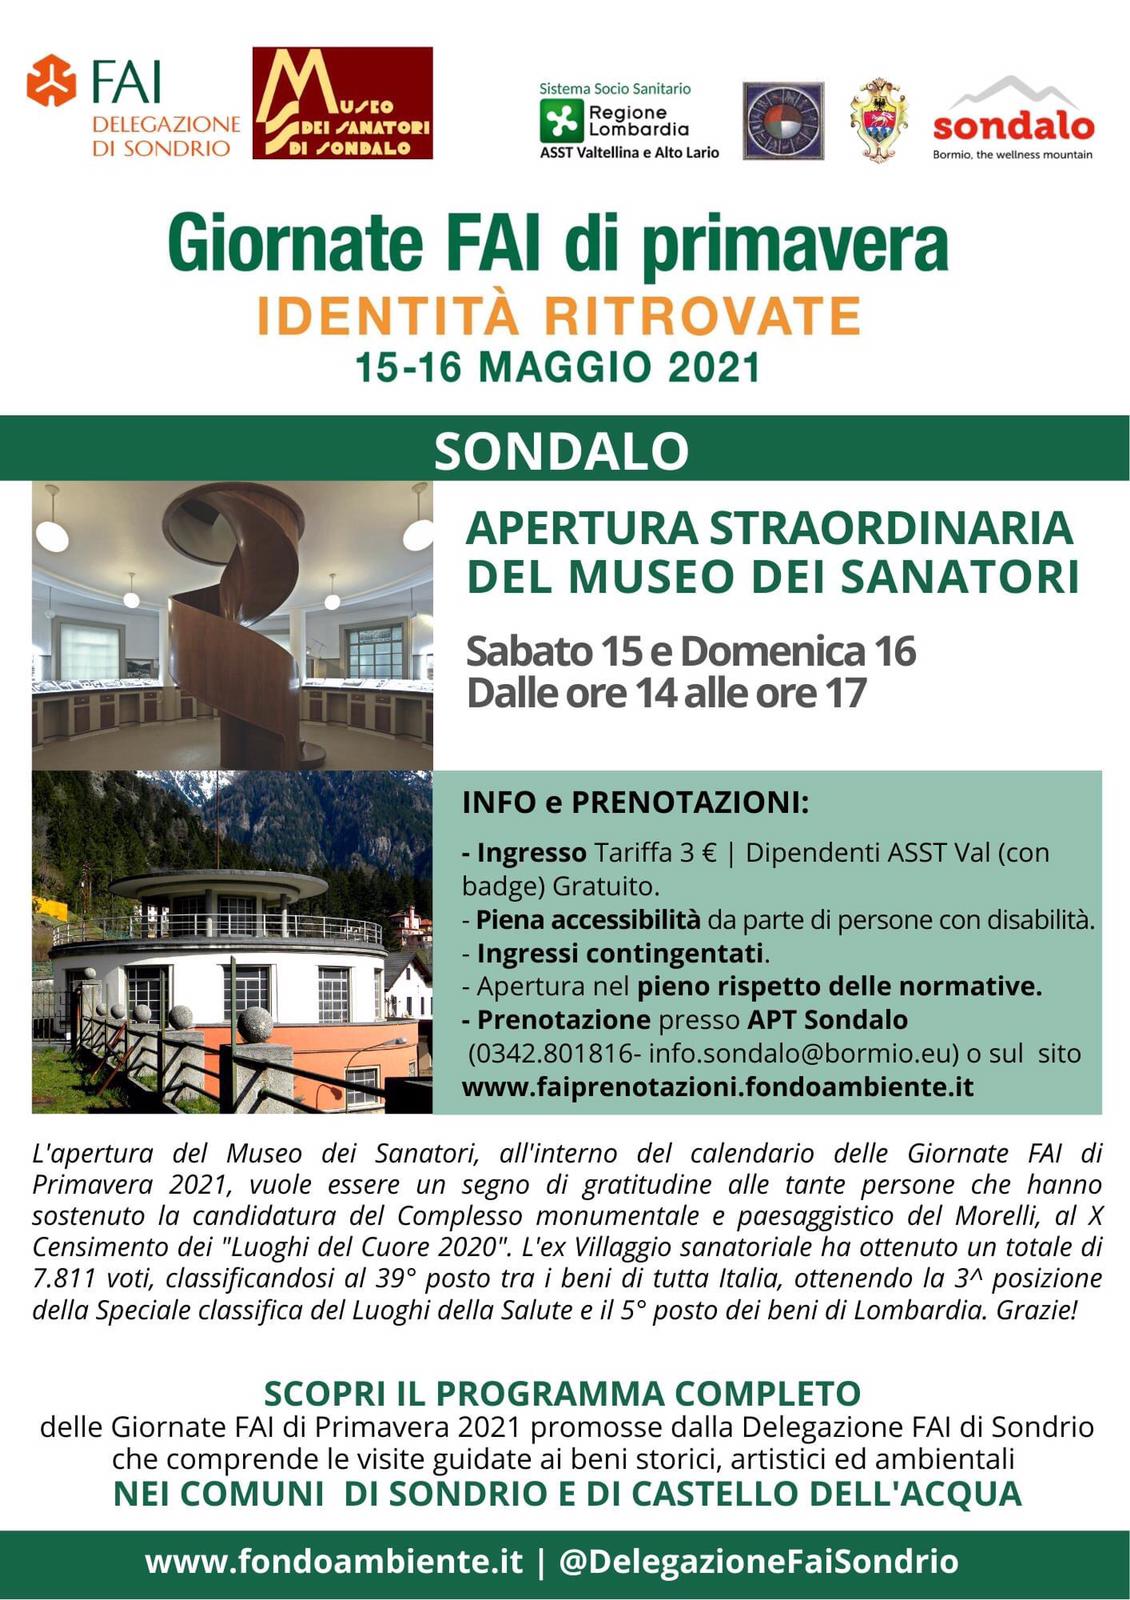 MUSEO DEI SANATORI - APERTURA STRAORDINARIA GIORNATE FAI DI PRIMAVERA 15-16 MAGGIO